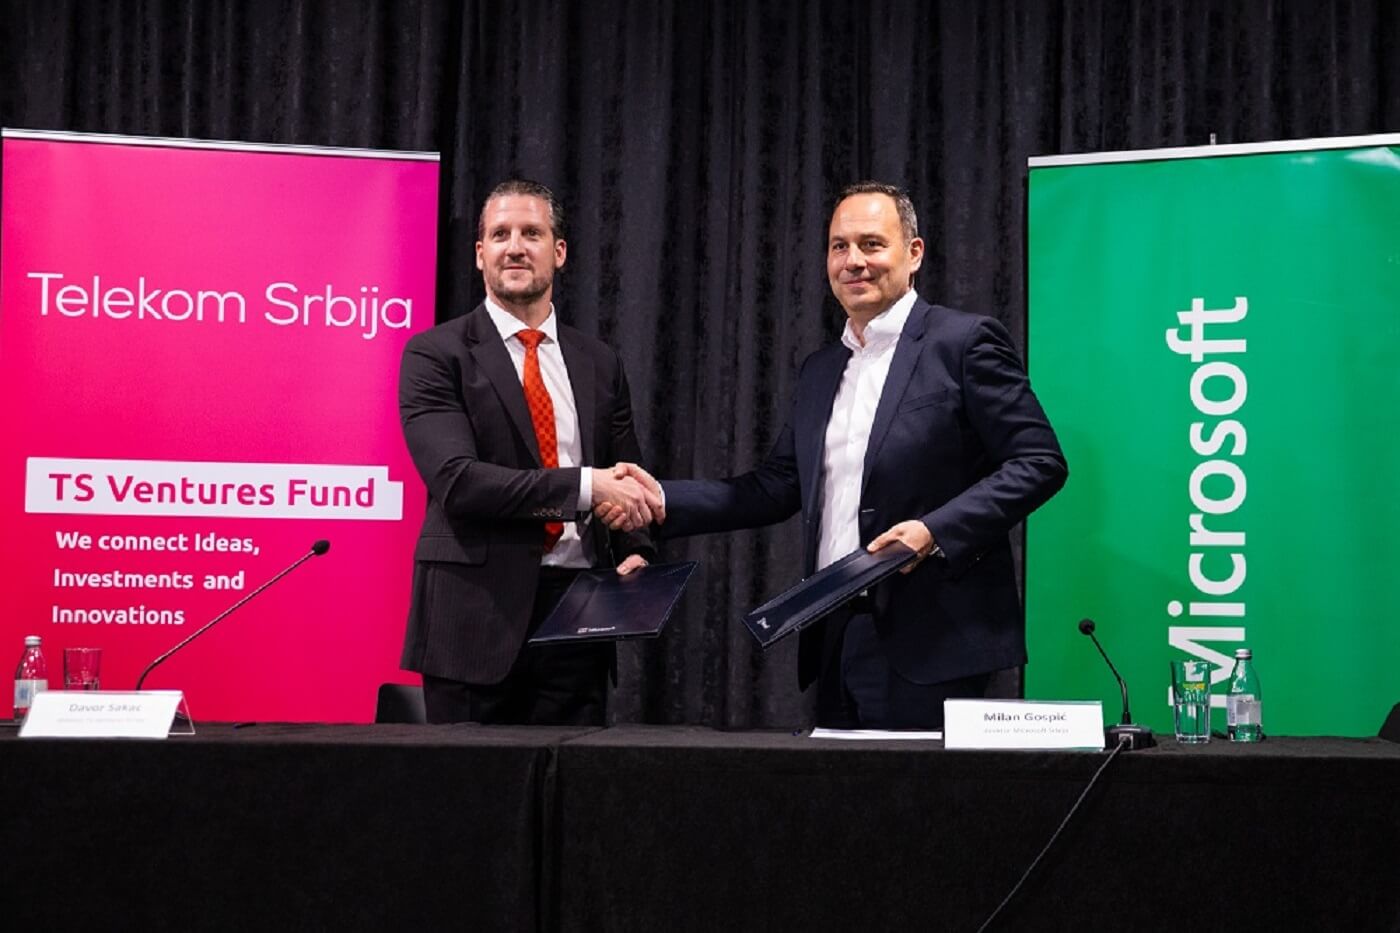 Potpisivanje ugovora, Microsoft i TS Ventures fond Telekoma Srbija